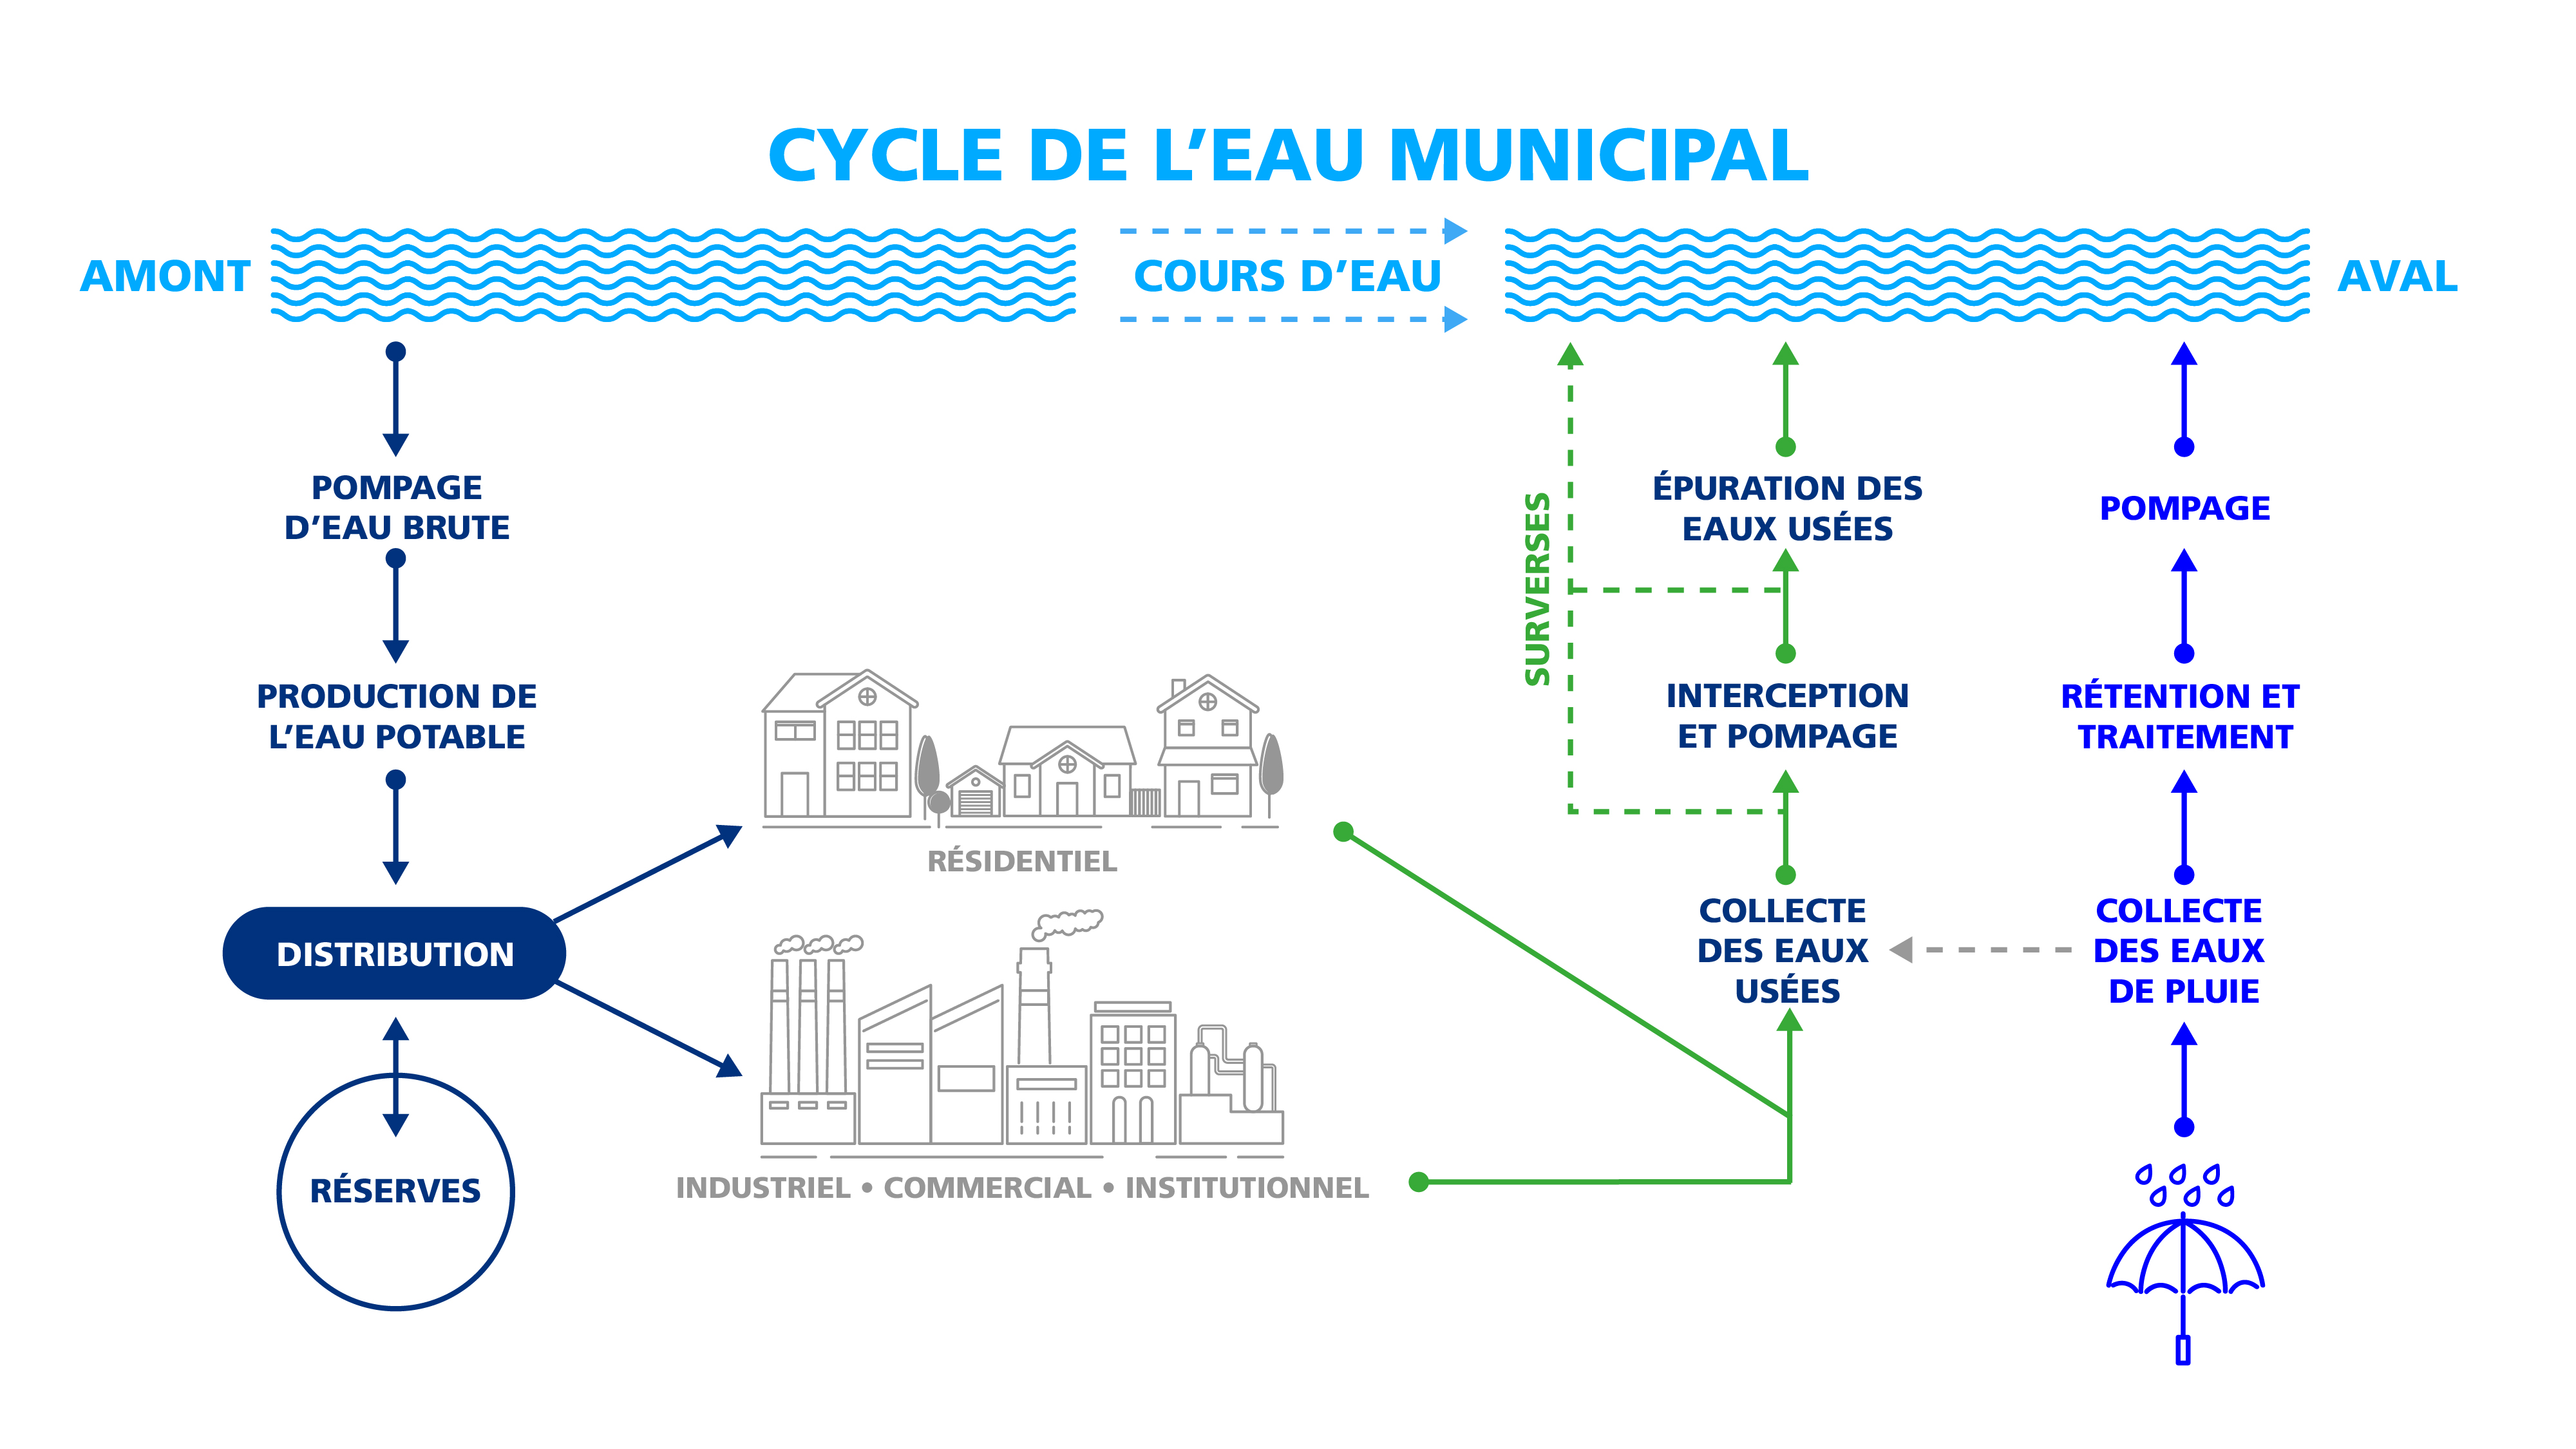 Cycle de l'eau municipal